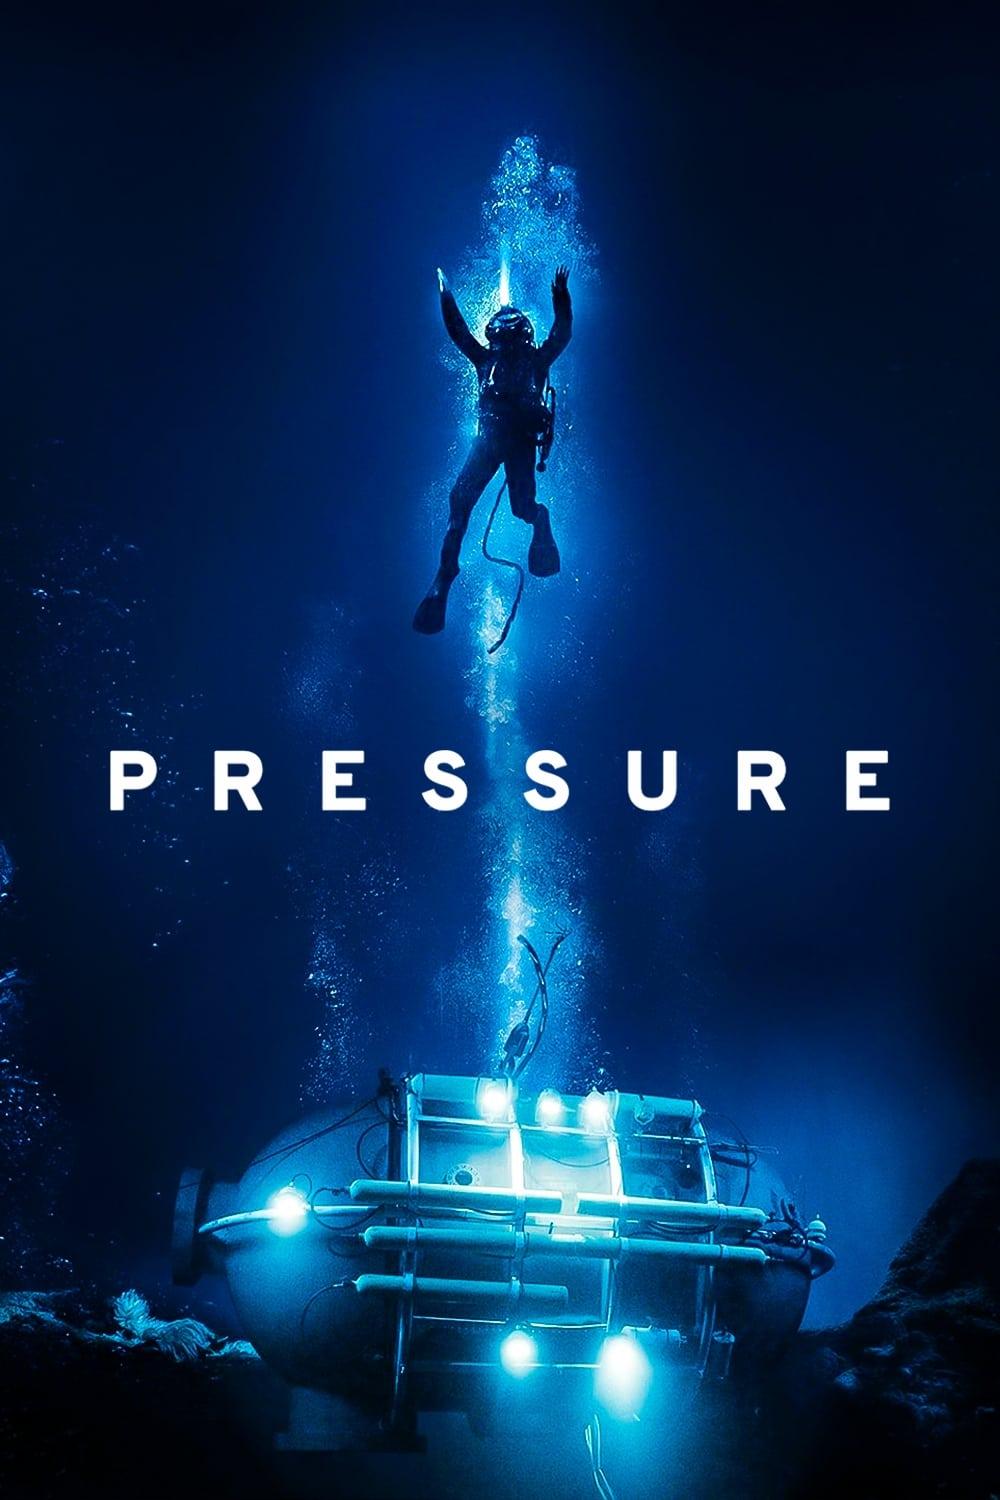 Pressure poster